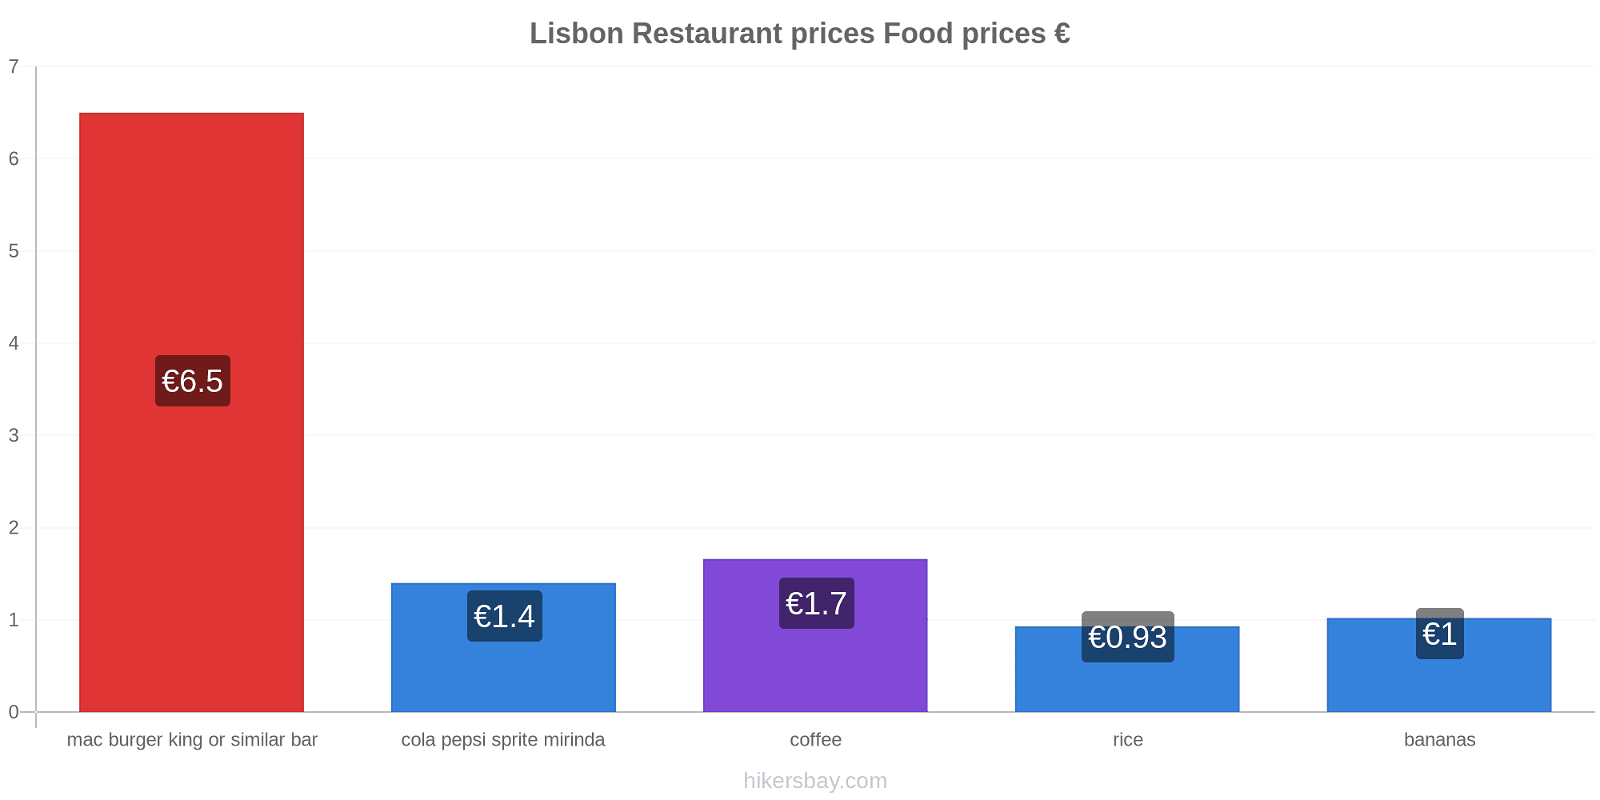 Lisbon price changes hikersbay.com